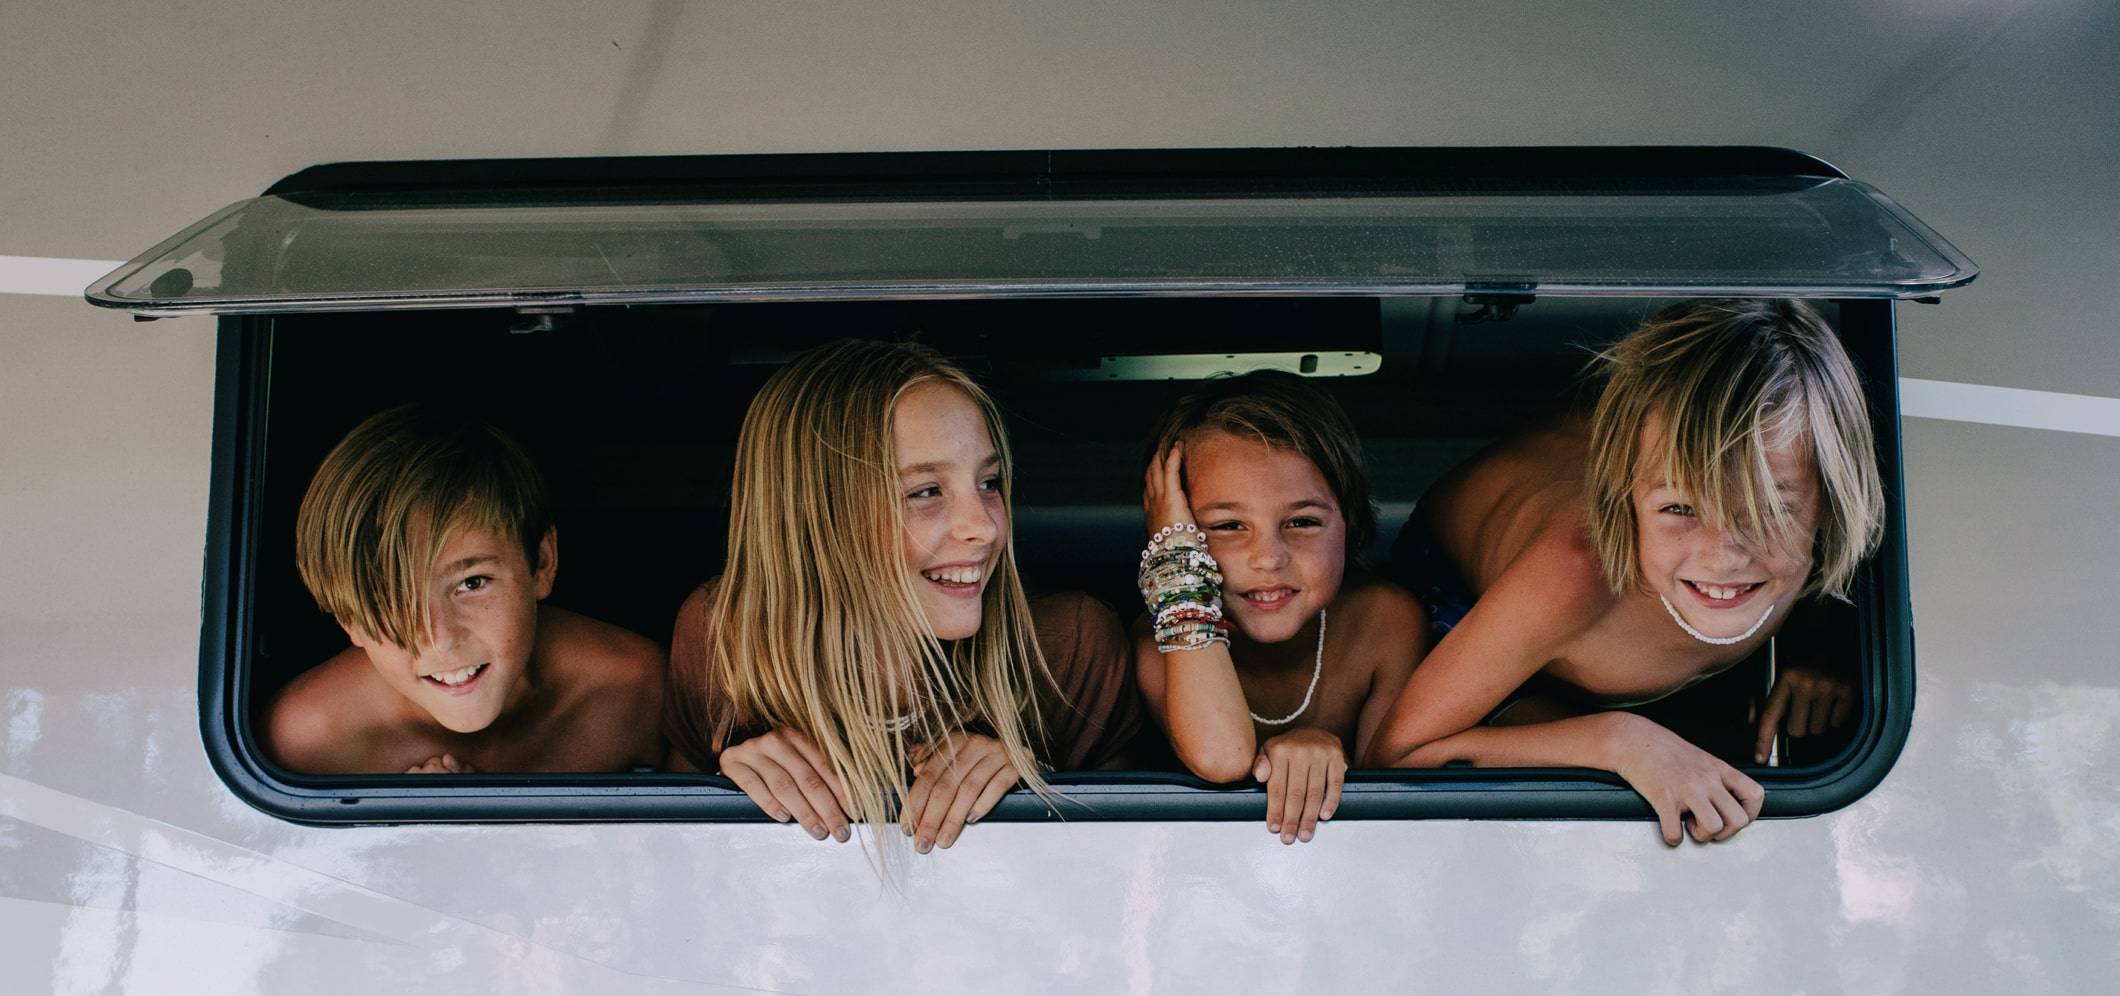 Hocking kids in van window